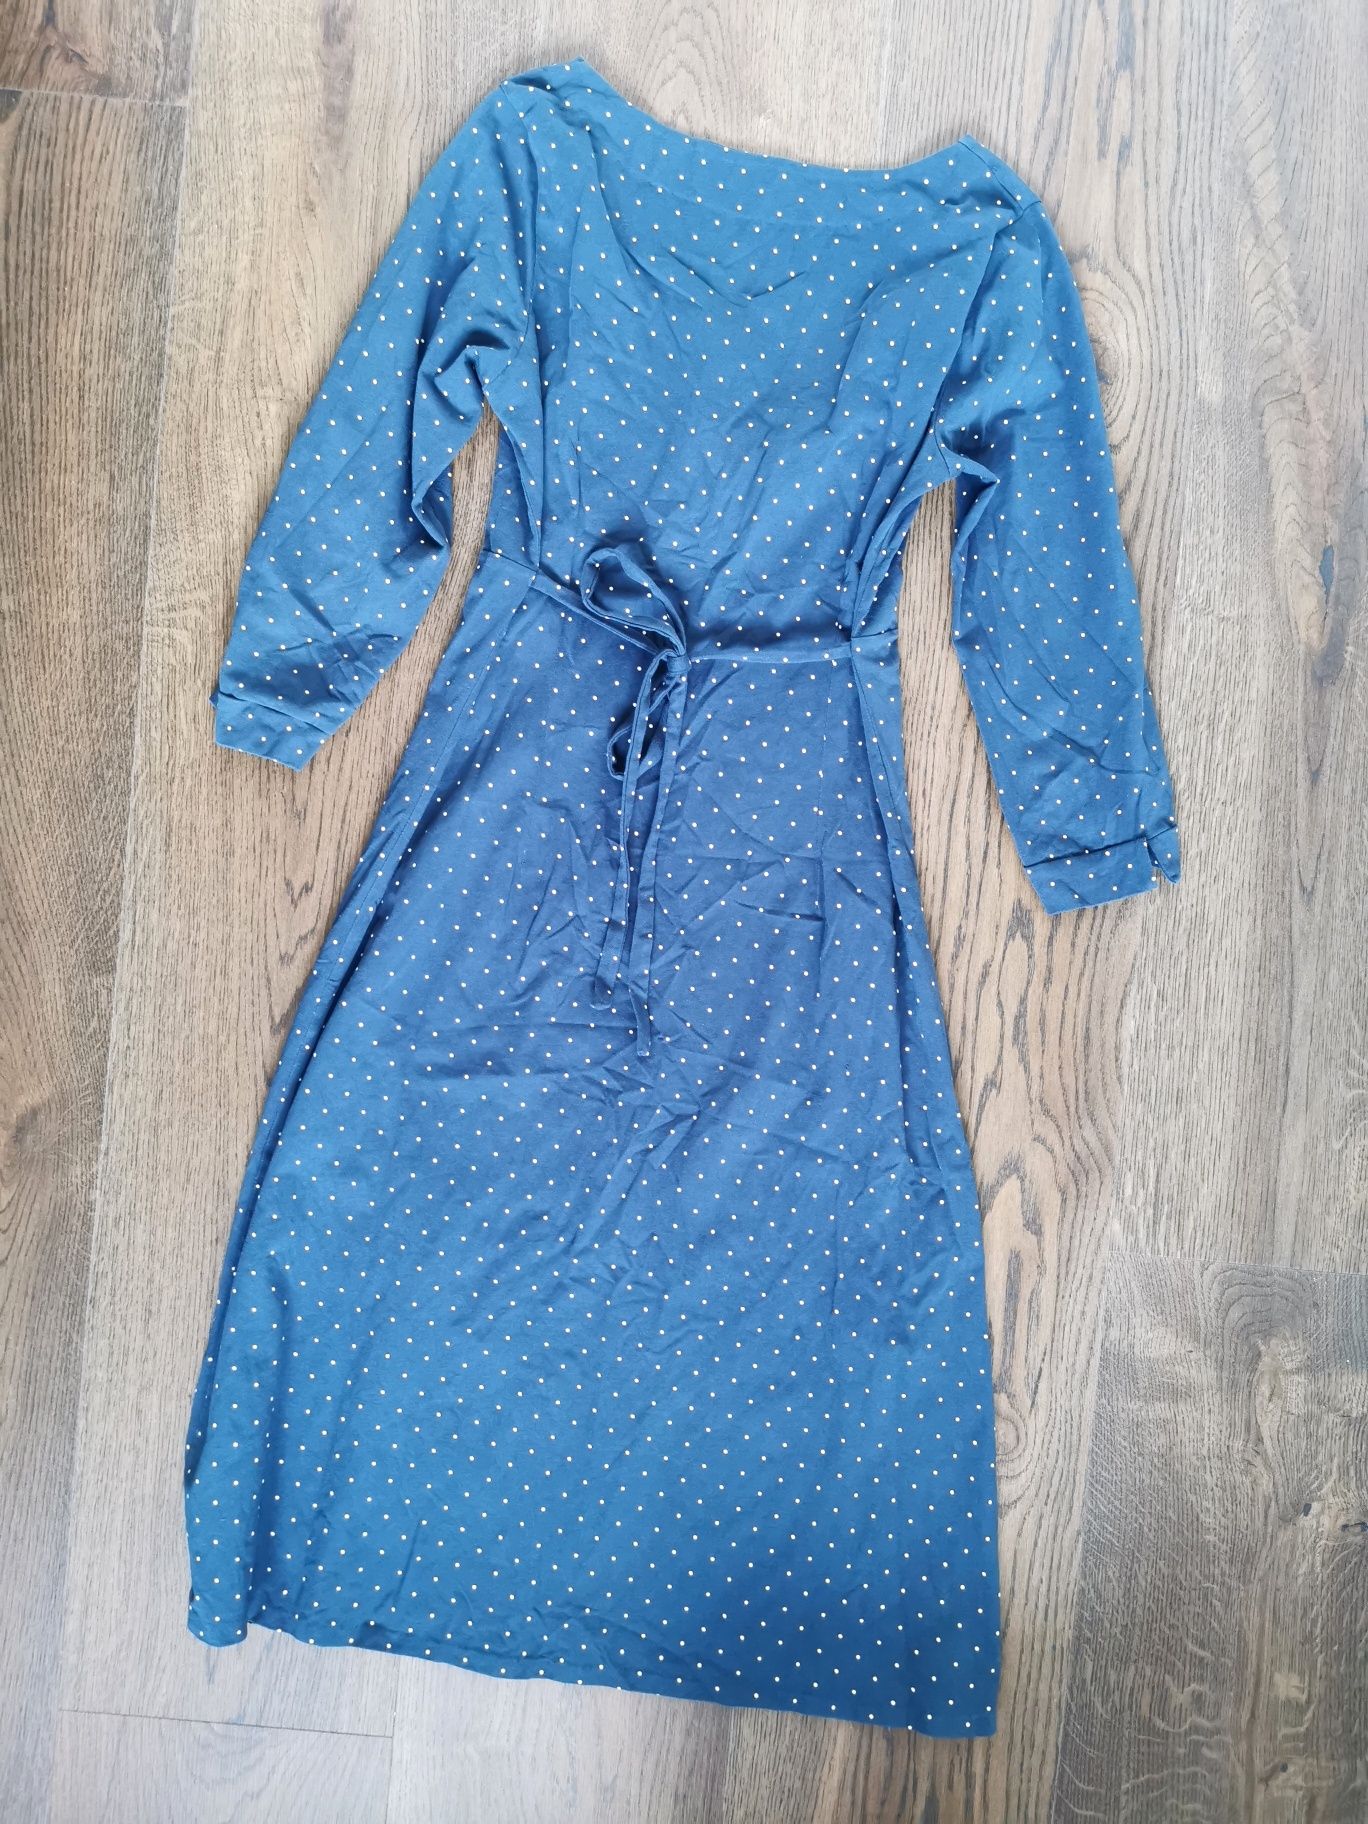 Niebieska sukienka w kropi, rozmiar M